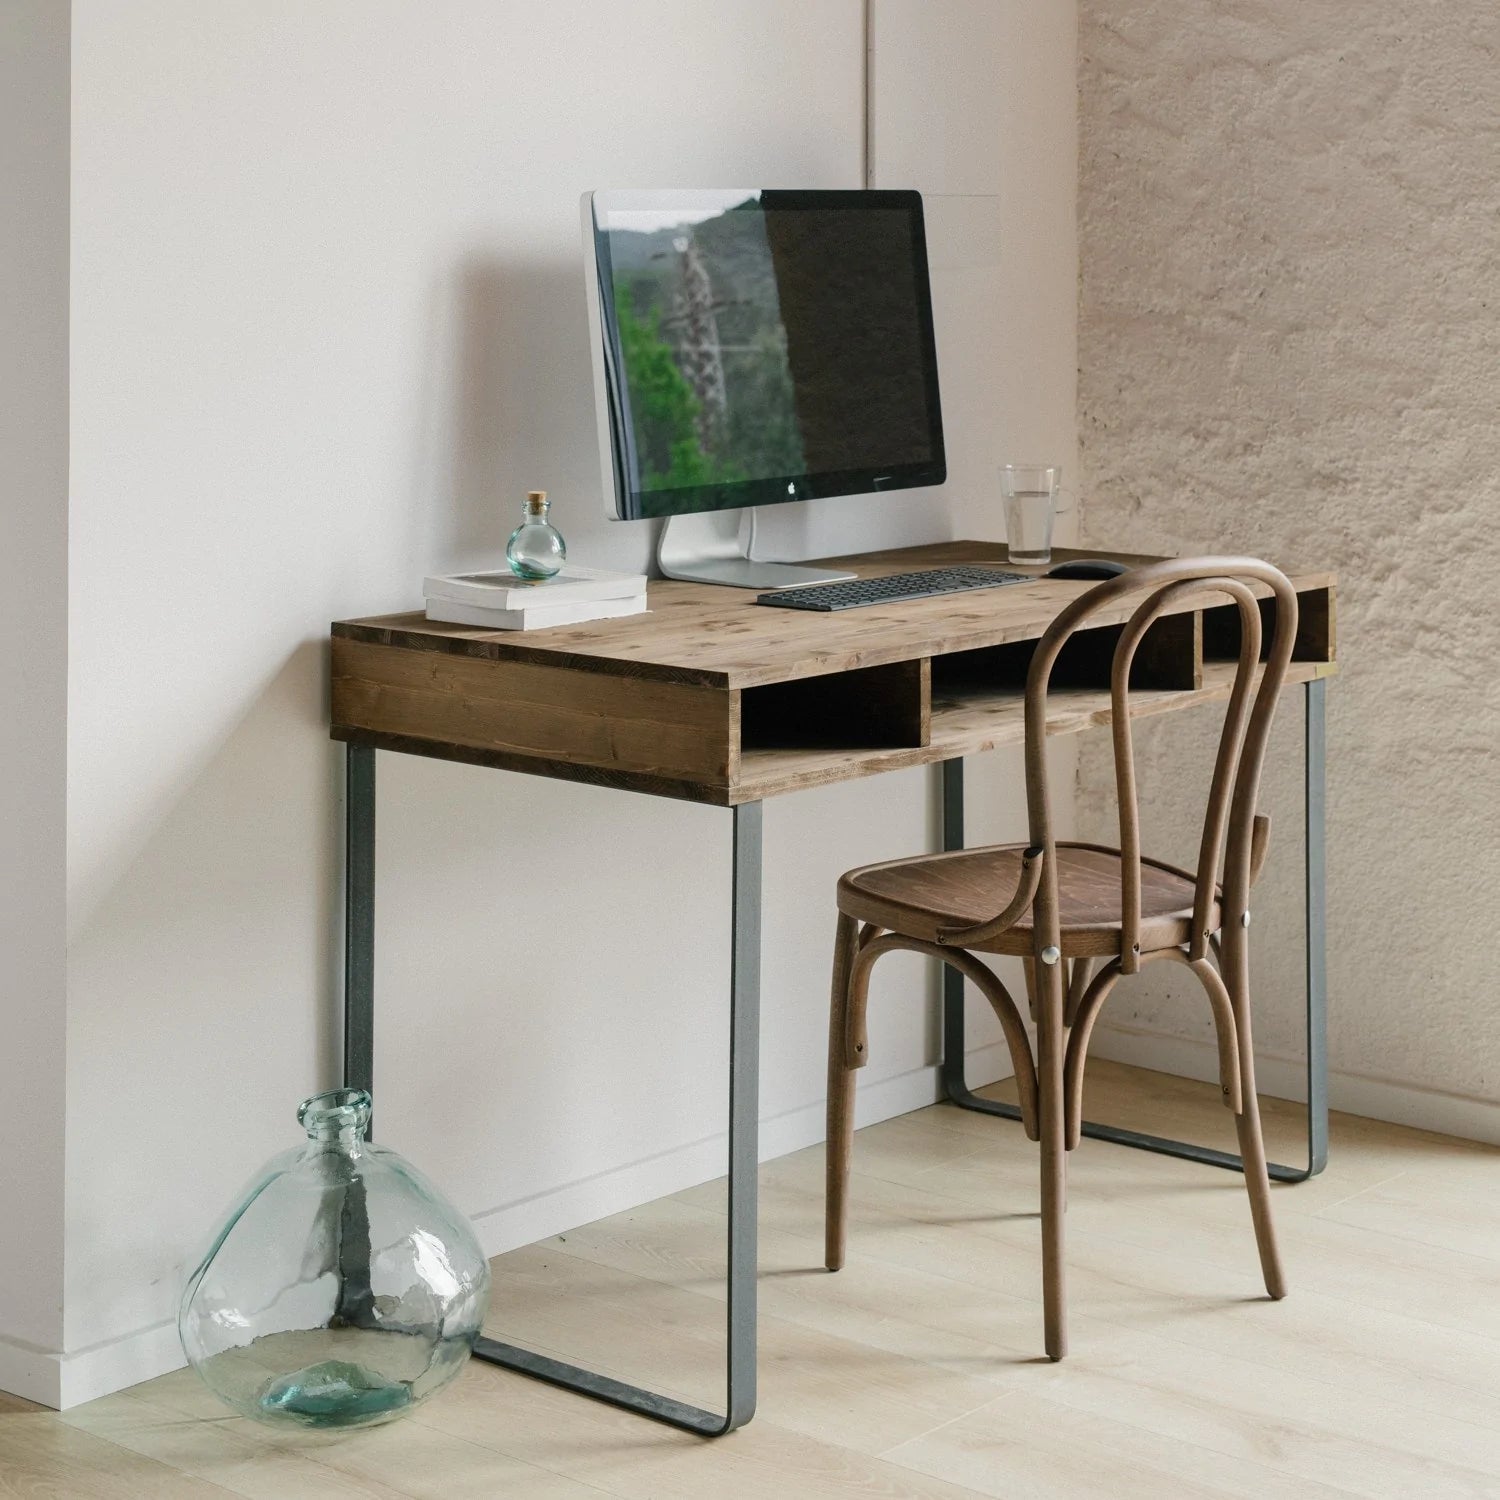 Cómo elegir el mejor mueble de escritorio para tu ordenador sin